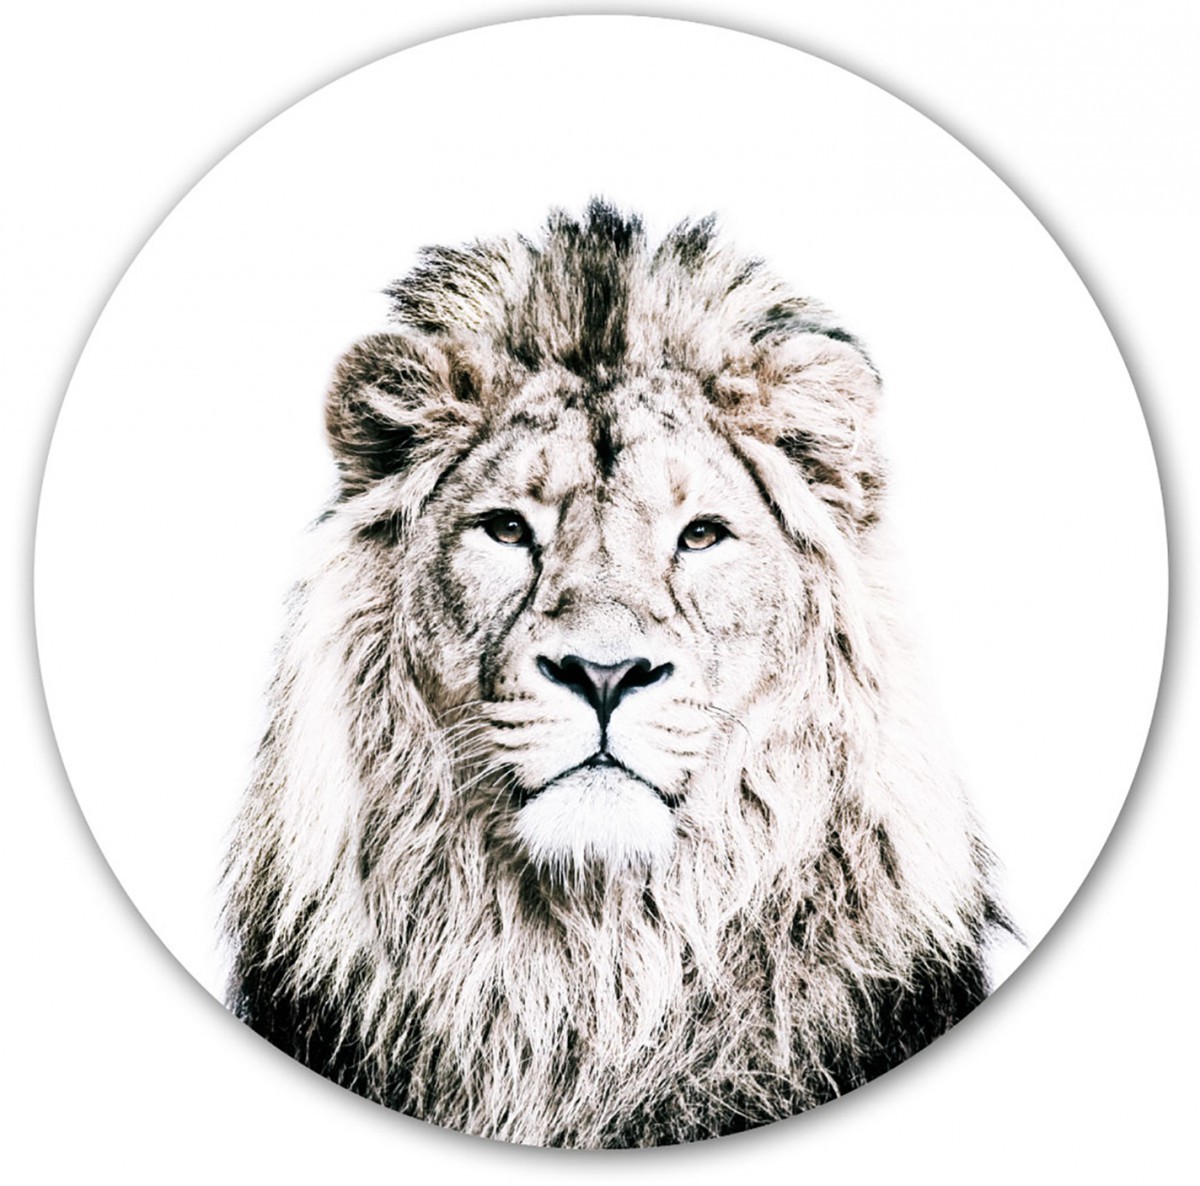 Sticker magnétique lion de Groovy Magnets - autocollant rond, sticker mural imprimé animal